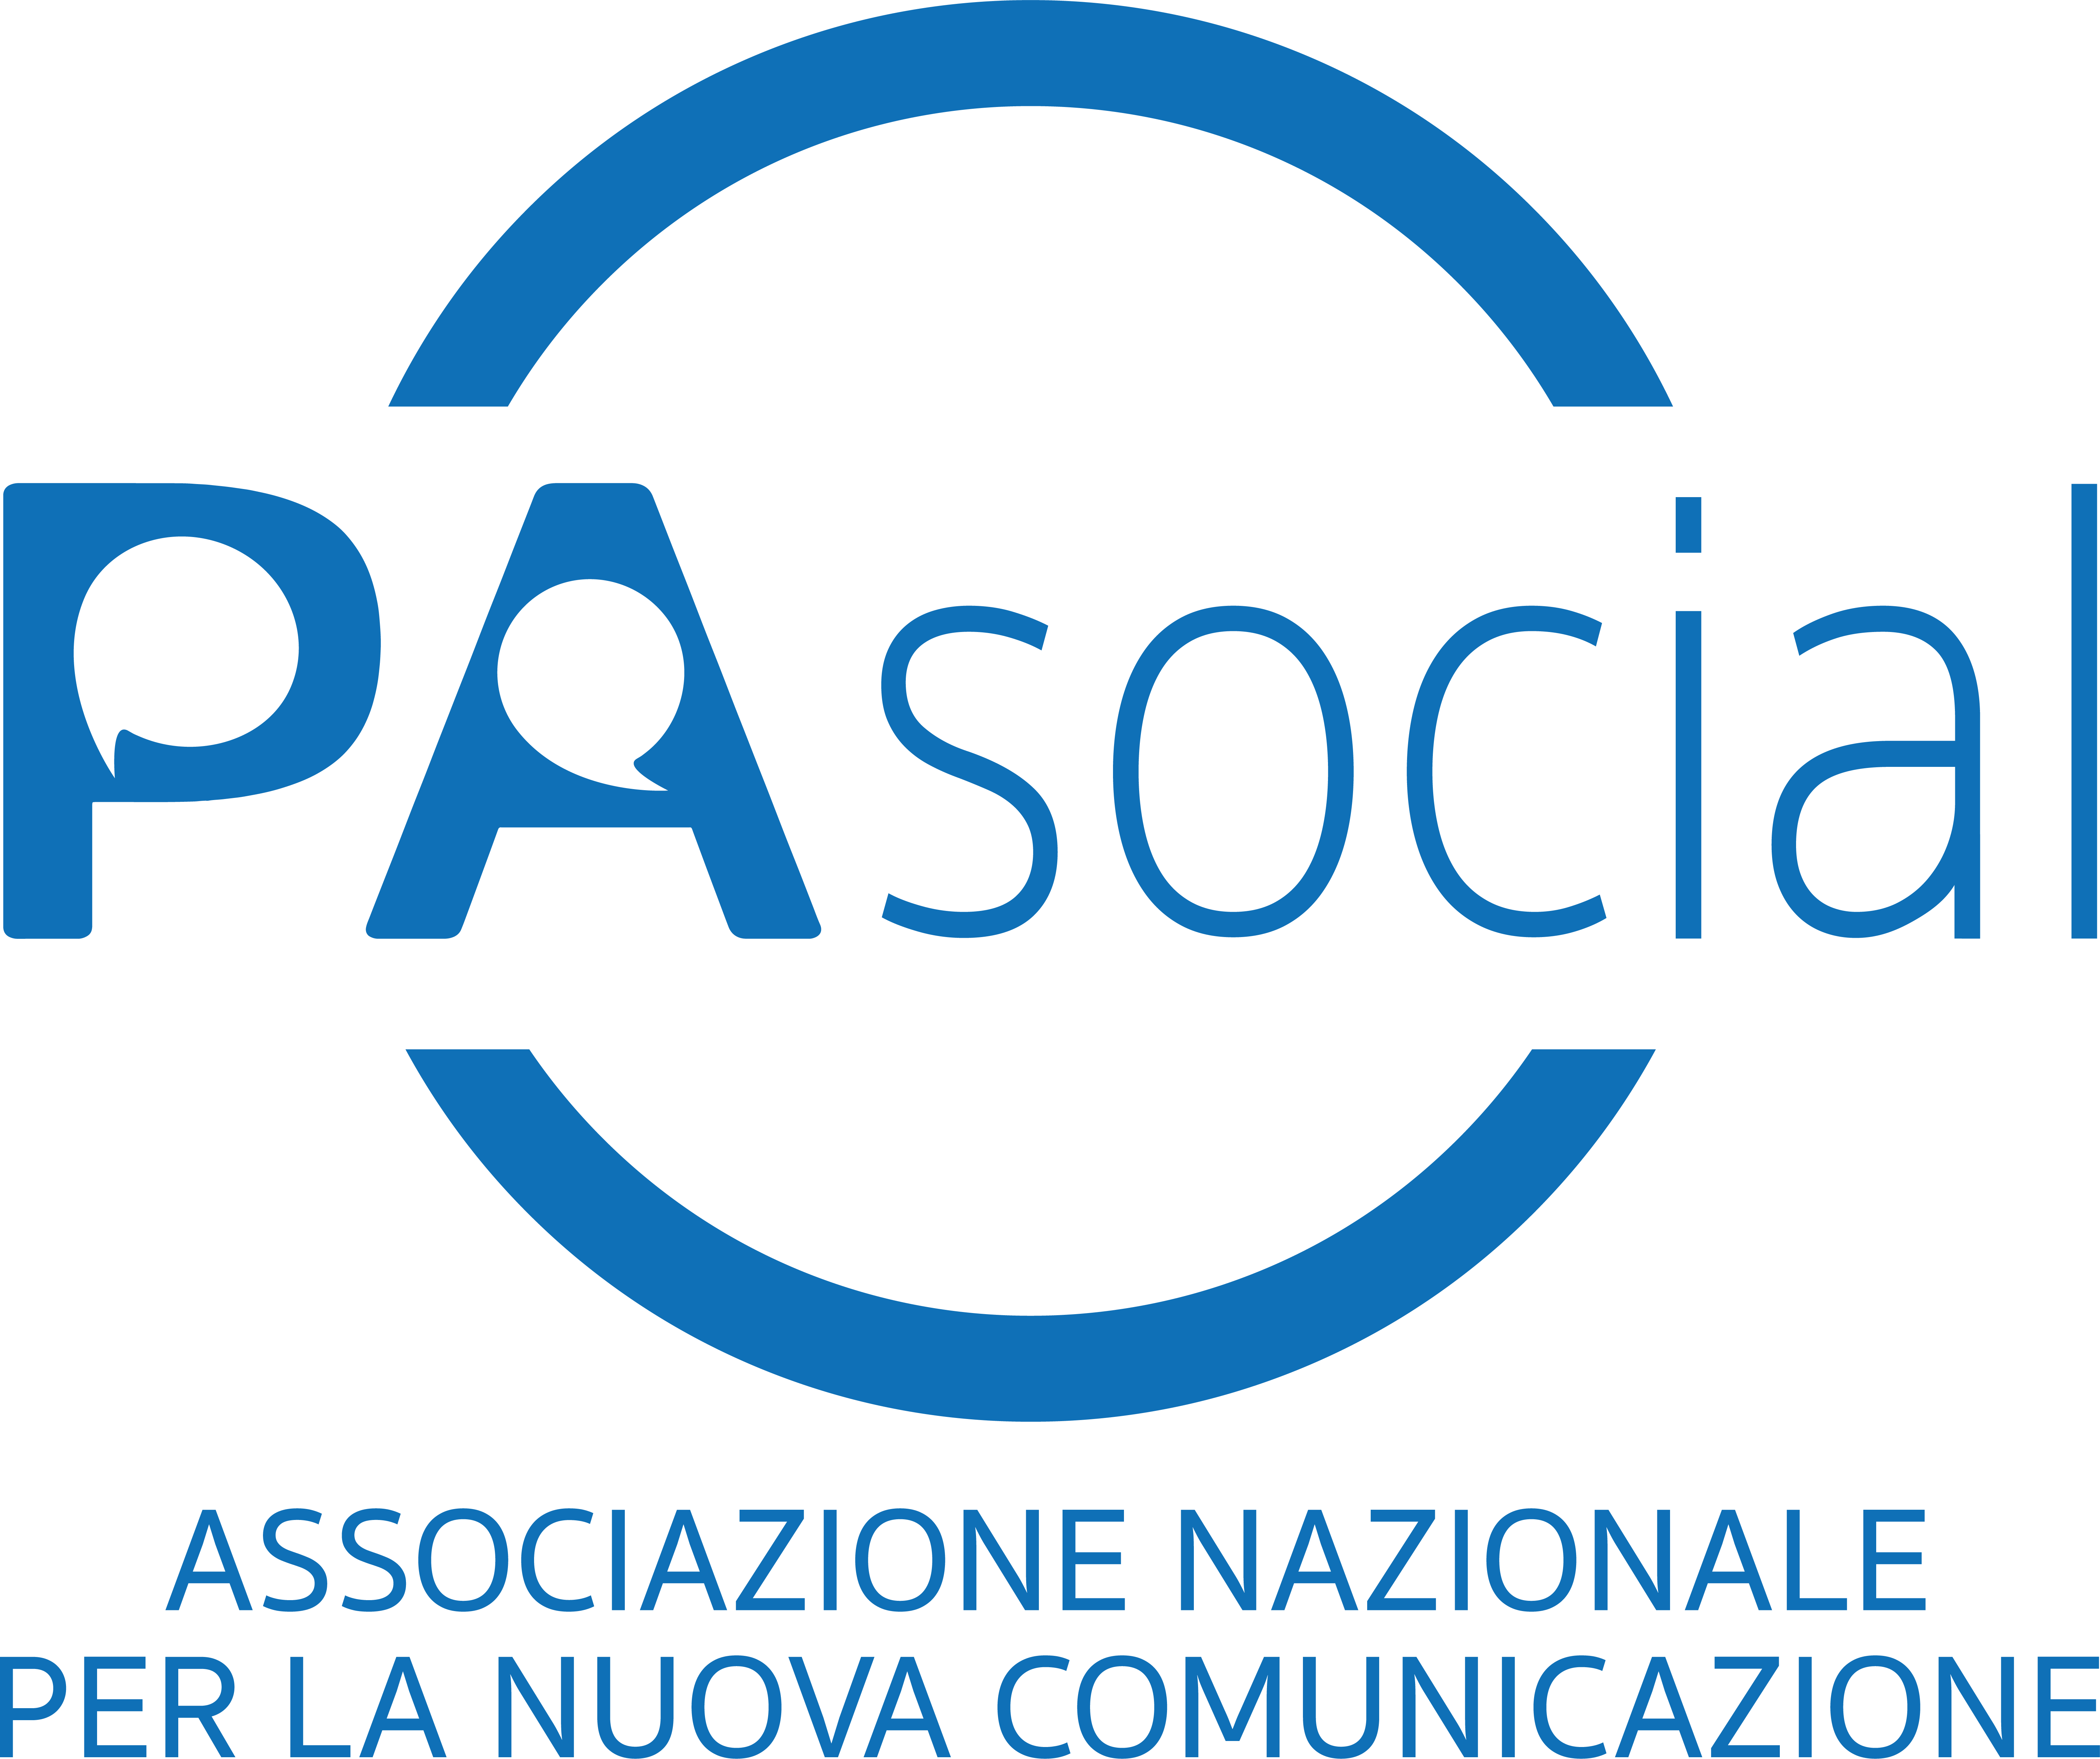 PA Social